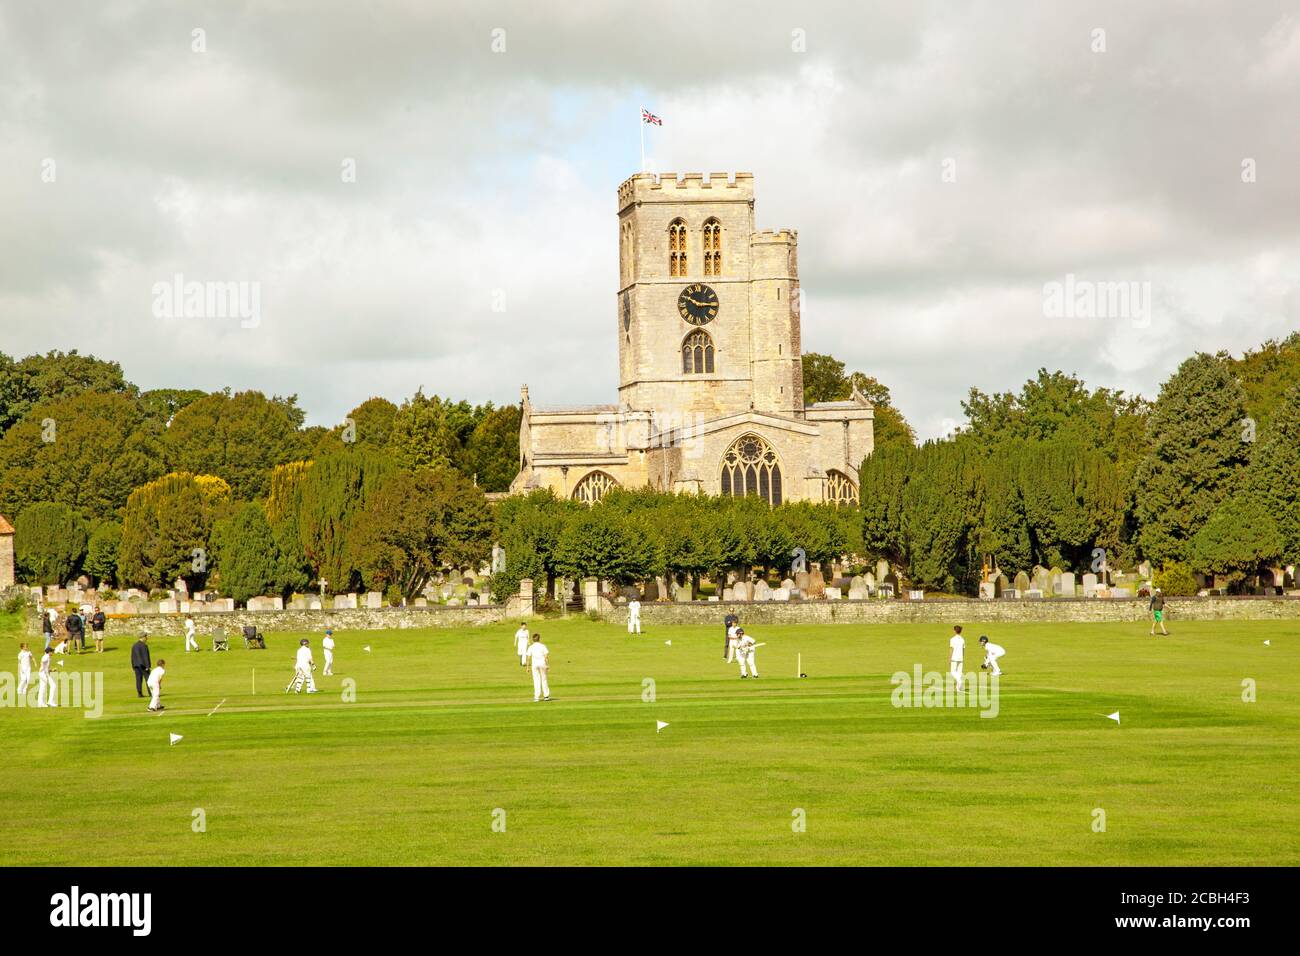 Match junior de cricket pour les jeunes sur la pittoresque prairie de l'église Stade du club de cricket de Thame, Oxfordshire, en Angleterre, avec St Mary's. église en arrière-plan Banque D'Images